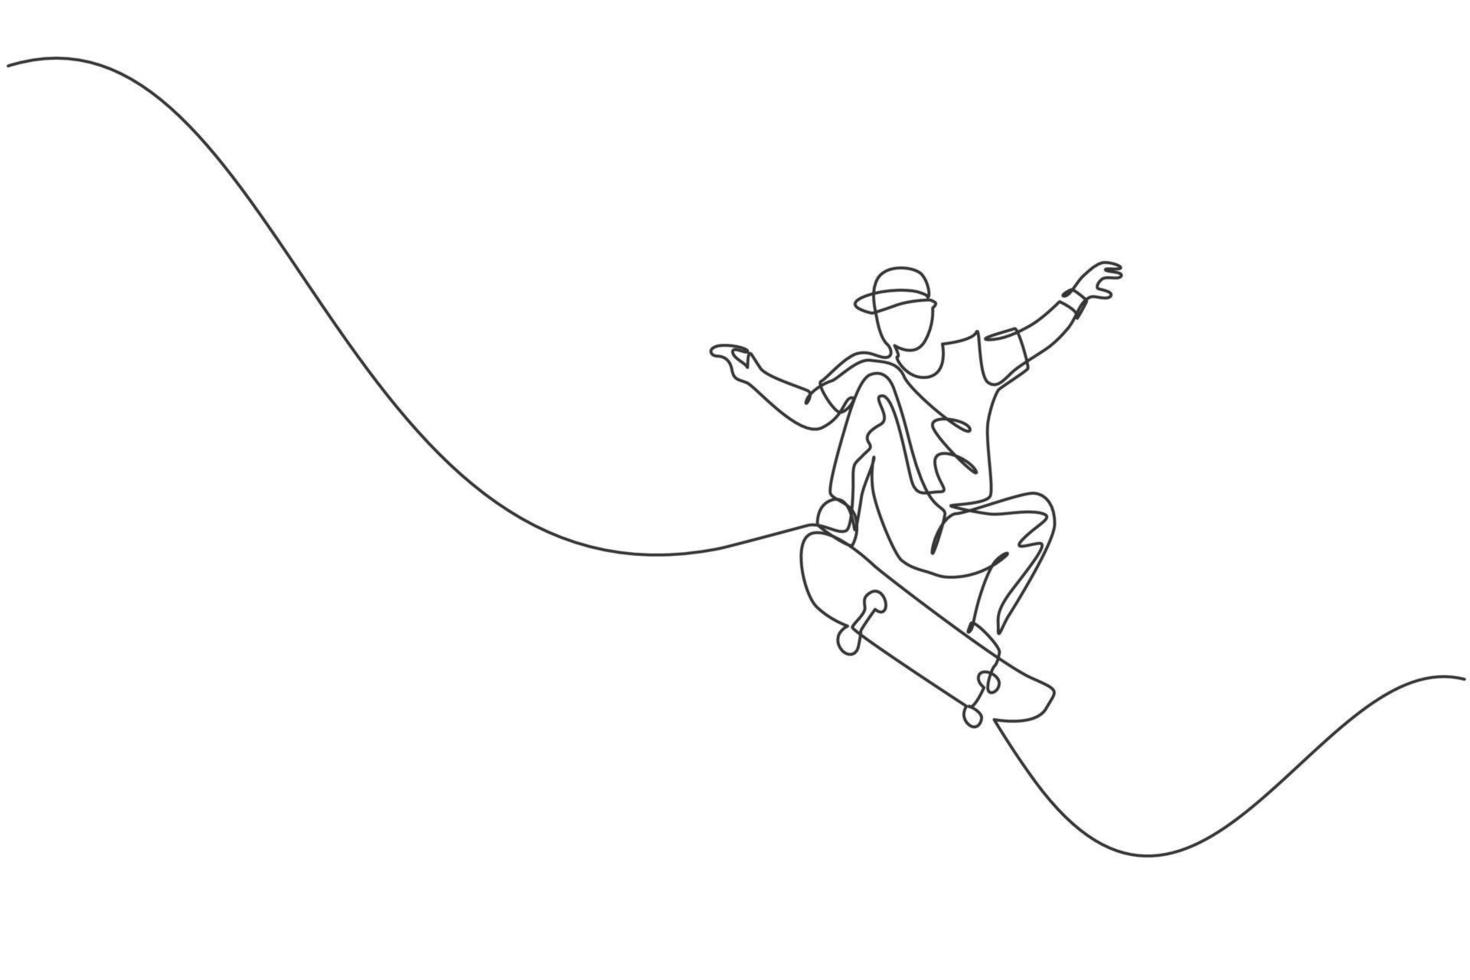 un dibujo de línea continua de un joven patinador genial montando patineta y haciendo un truco de salto en el parque de patinaje. concepto de deporte adolescente extremo. Ilustración de vector de diseño de dibujo de línea única dinámica